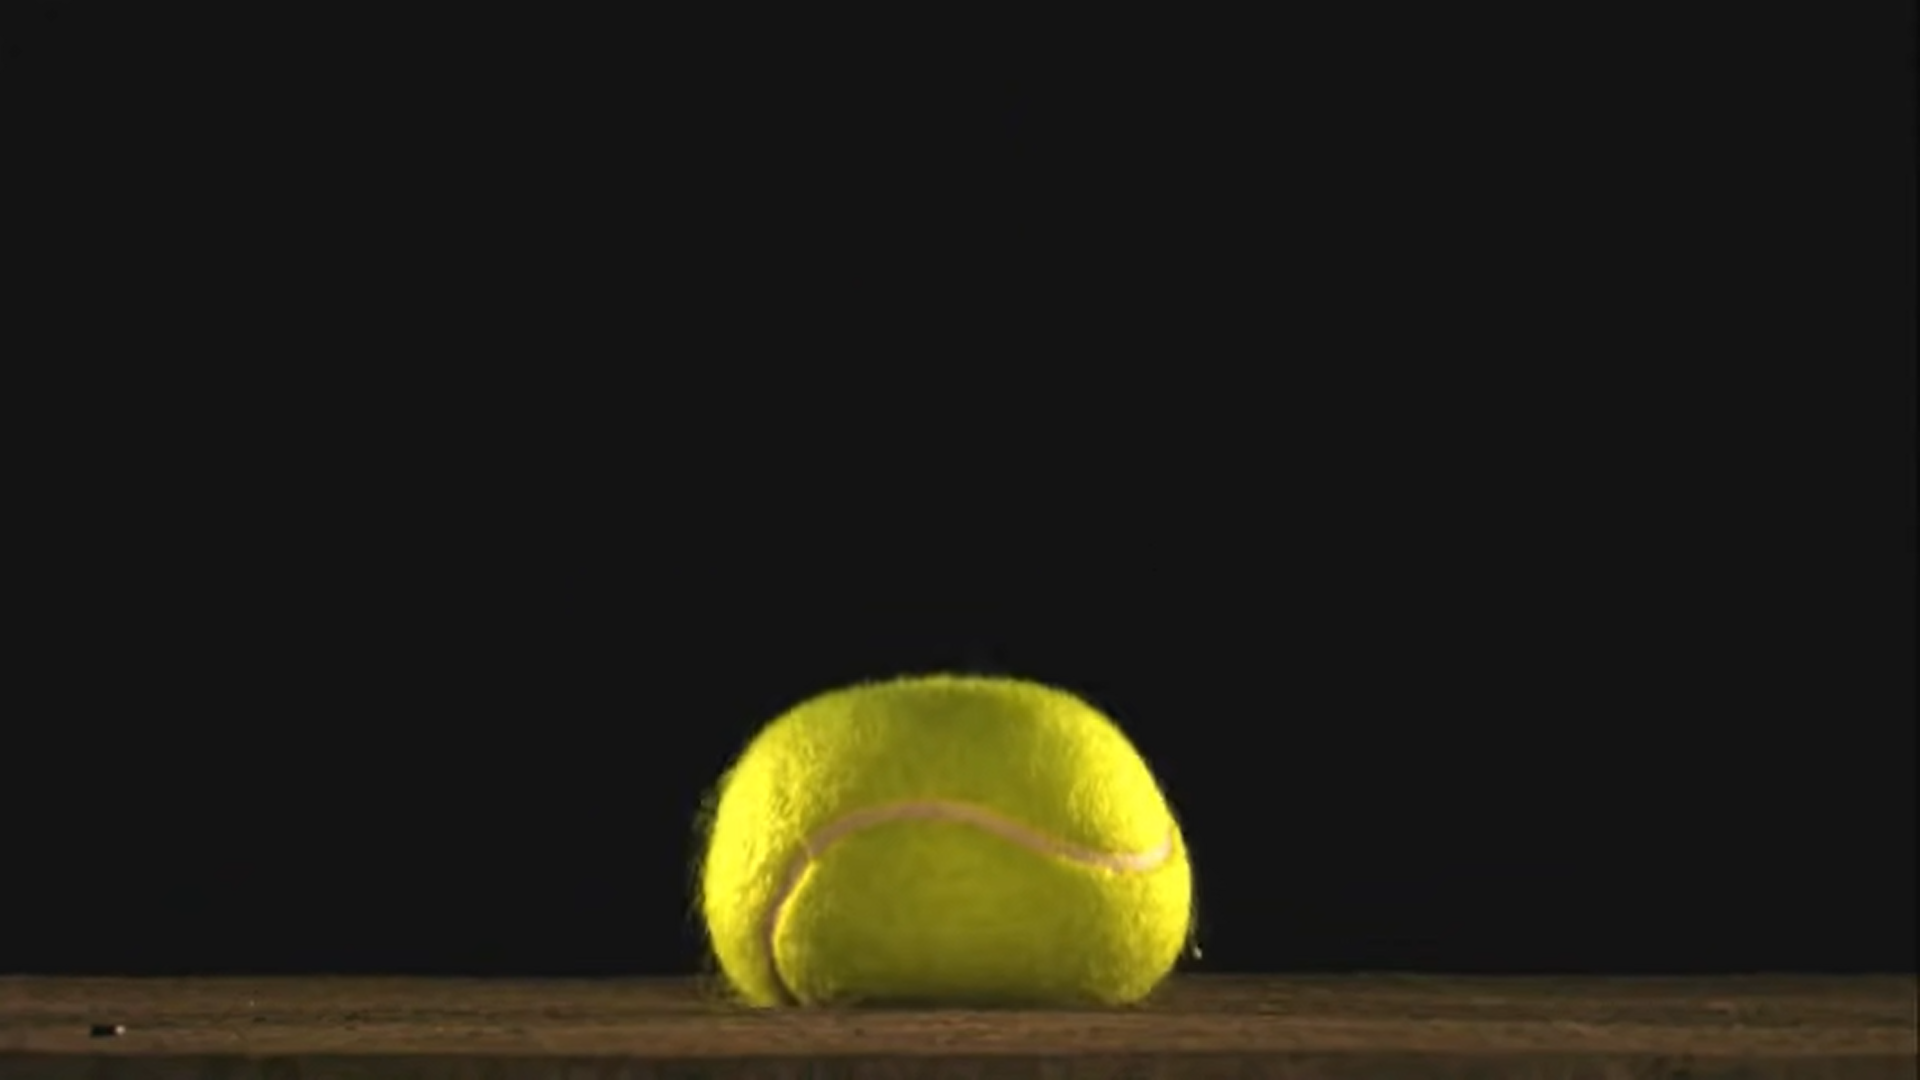 Rys. 4. Zdjęcie przedstawia odkształconą piłkę tenisową "przyklejoną" do podłogi. Piłka zderzając się z podłogą podczas odbijania spłaszcza się (odkształca się) chwilowo.